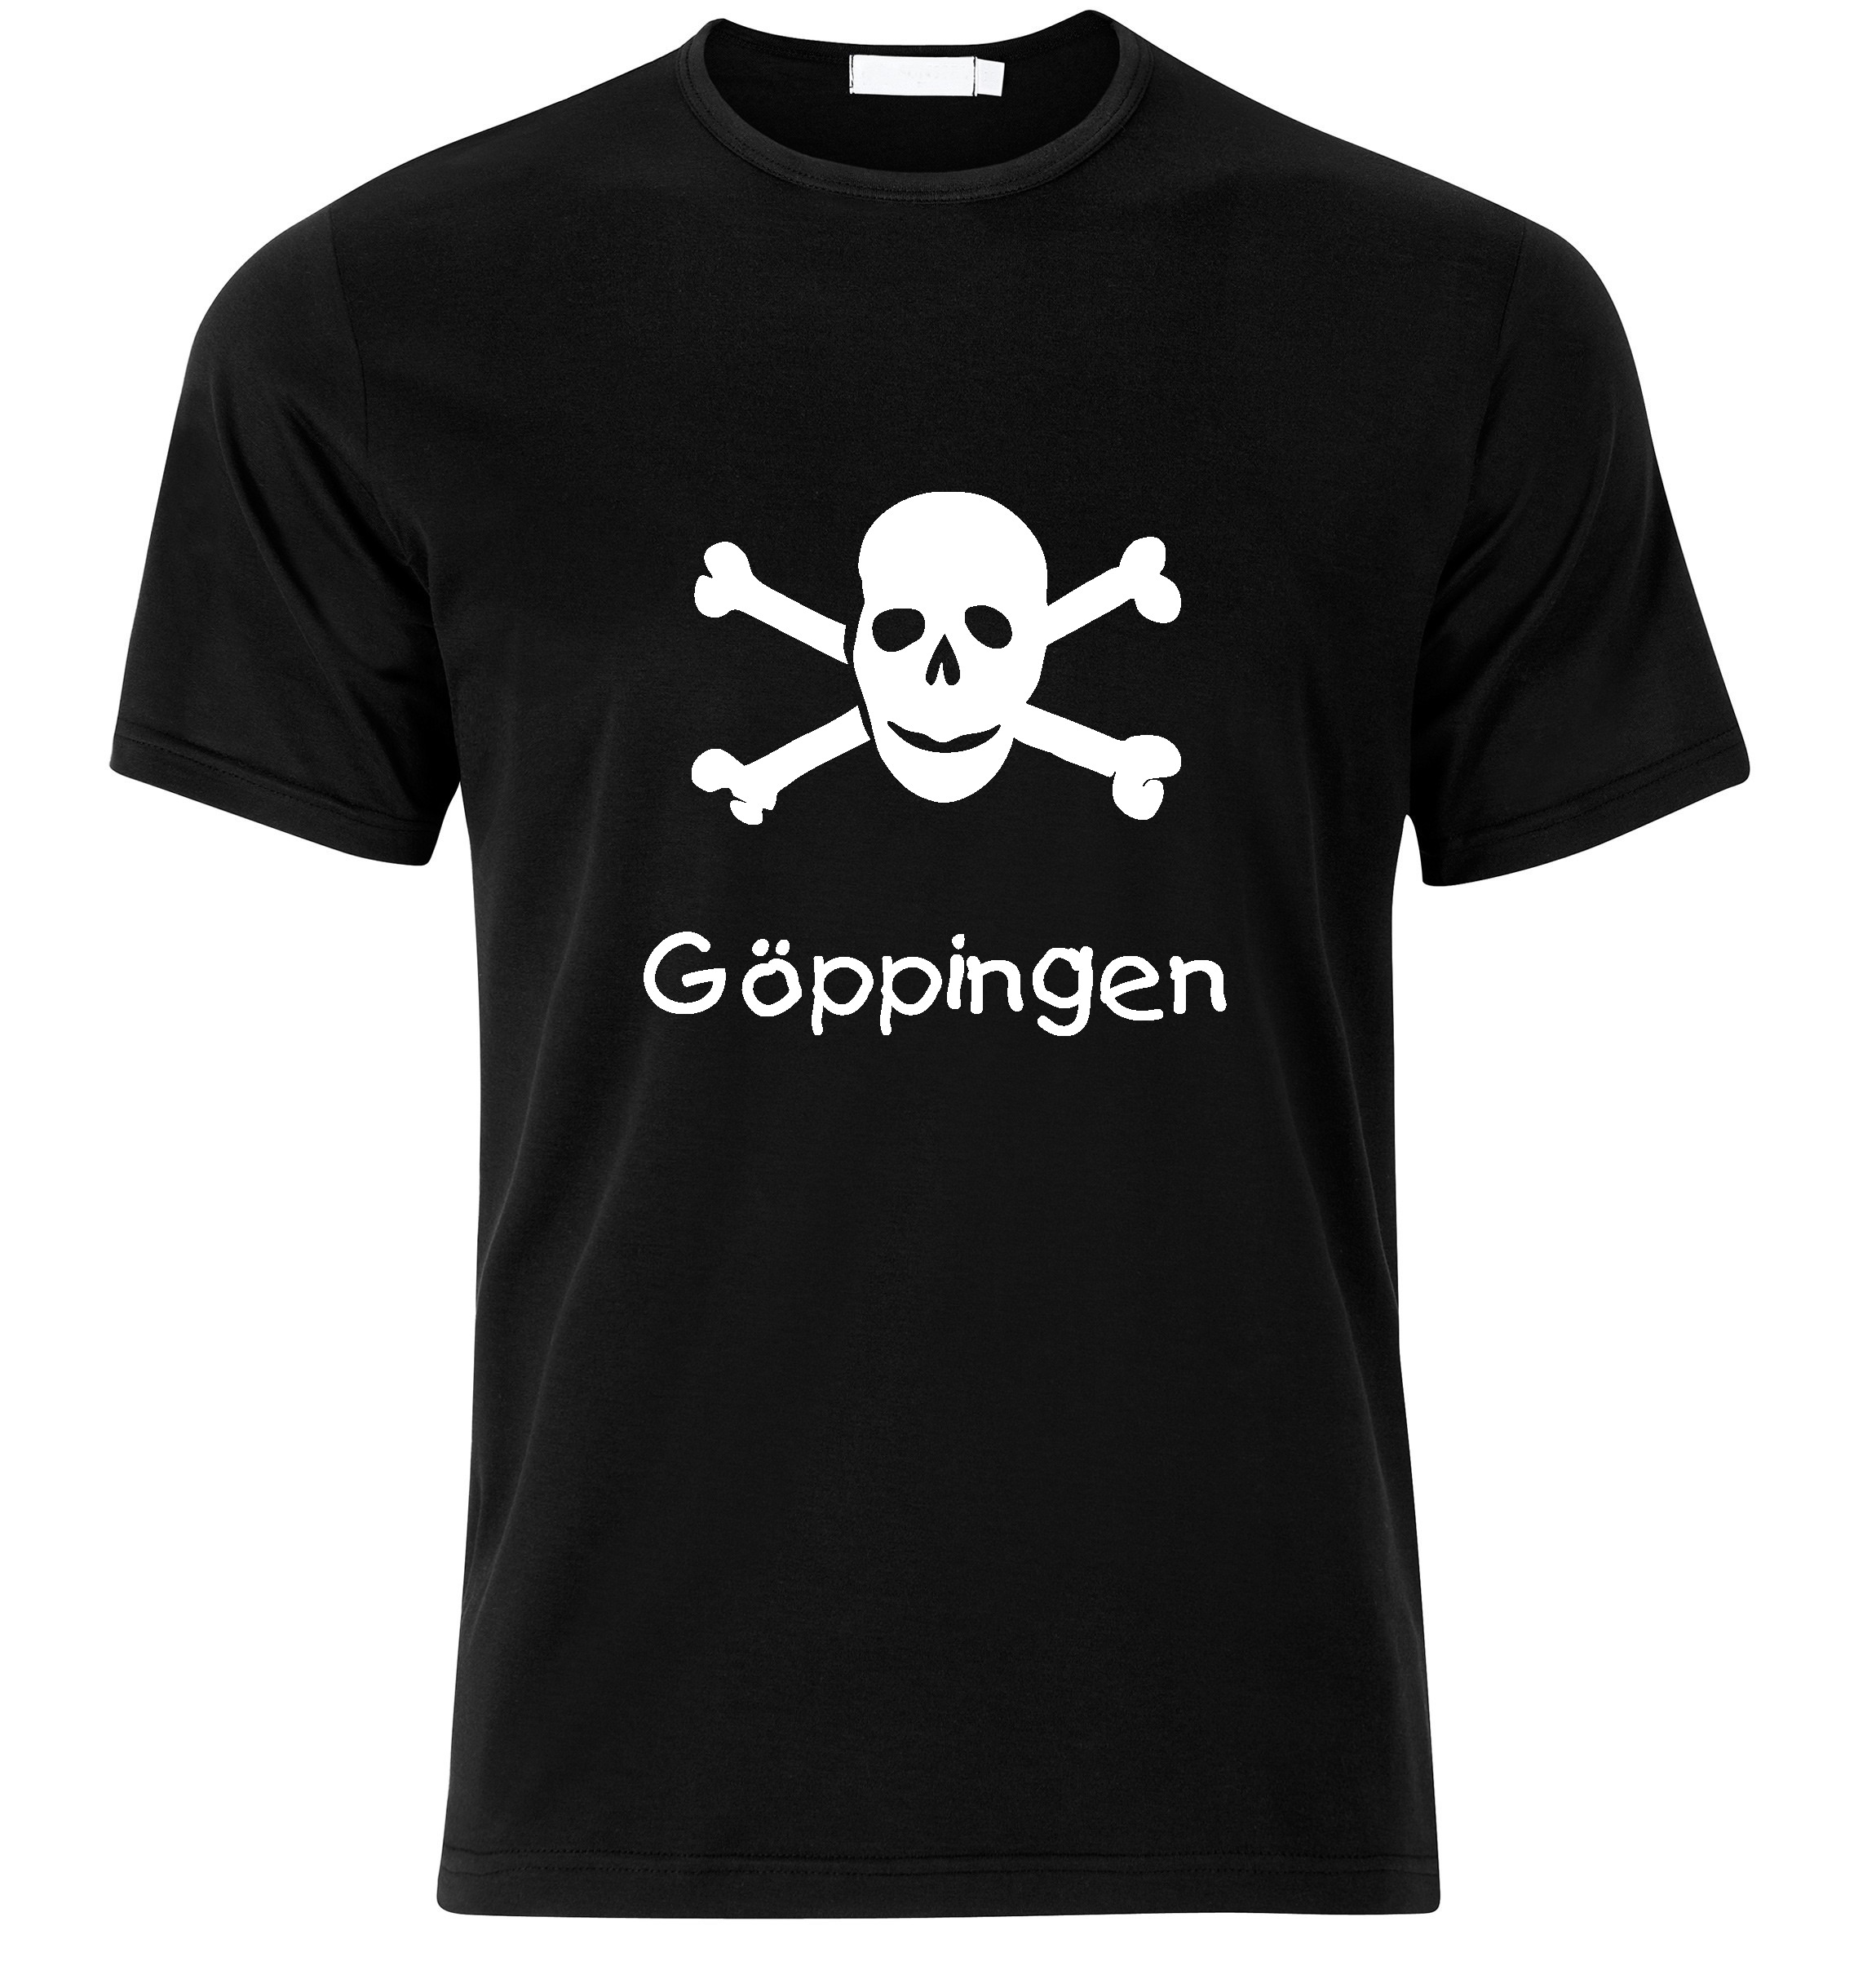 T-Shirt Göppingen Jolly Roger, Totenkopf